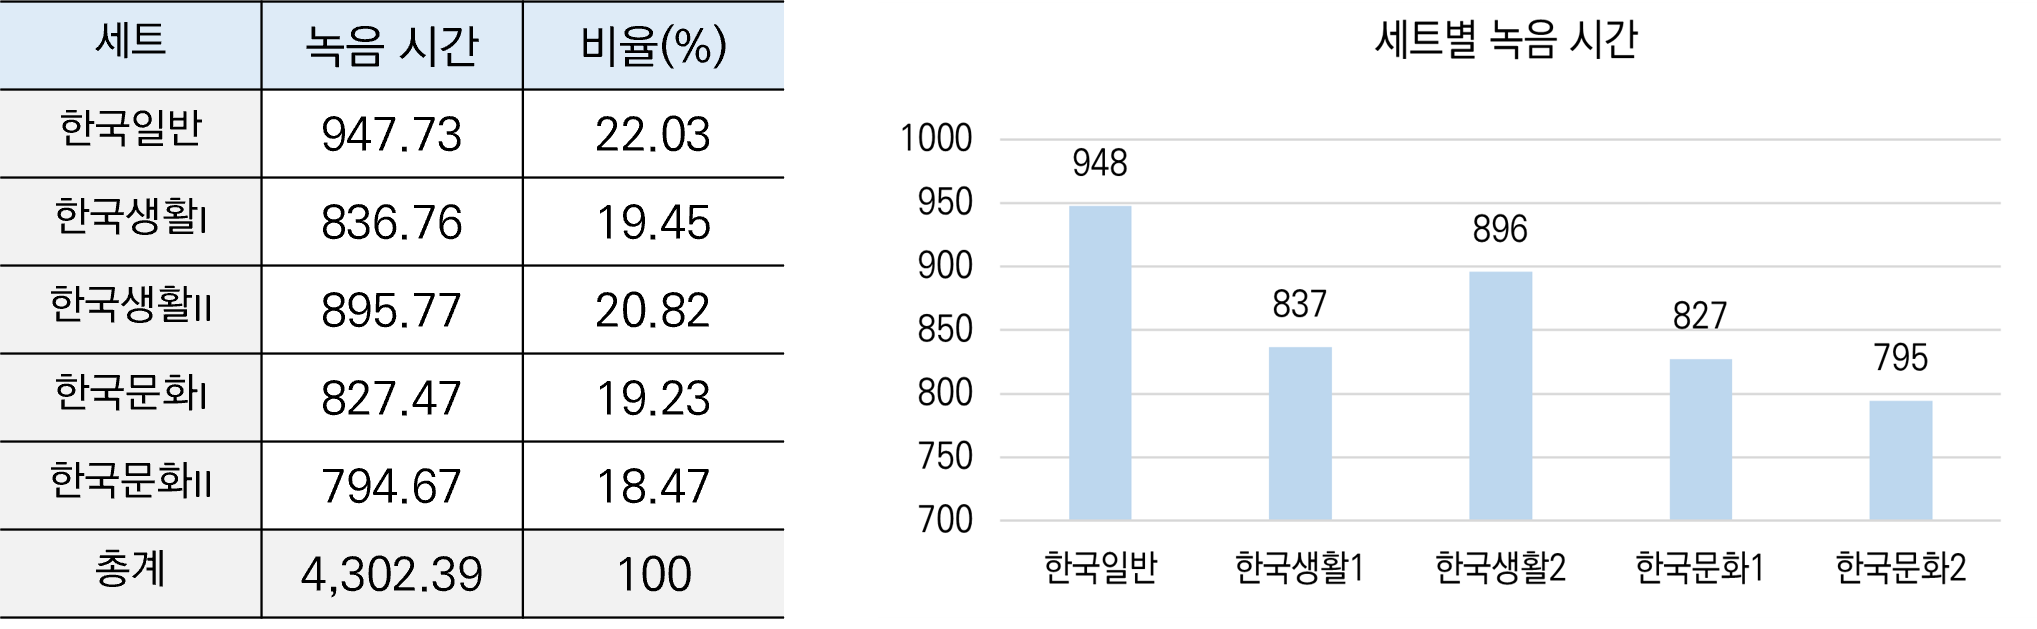 인공지능 학습을 위한 외국인 한국어 발화 음성-데이터 분포_2_세트별 분포